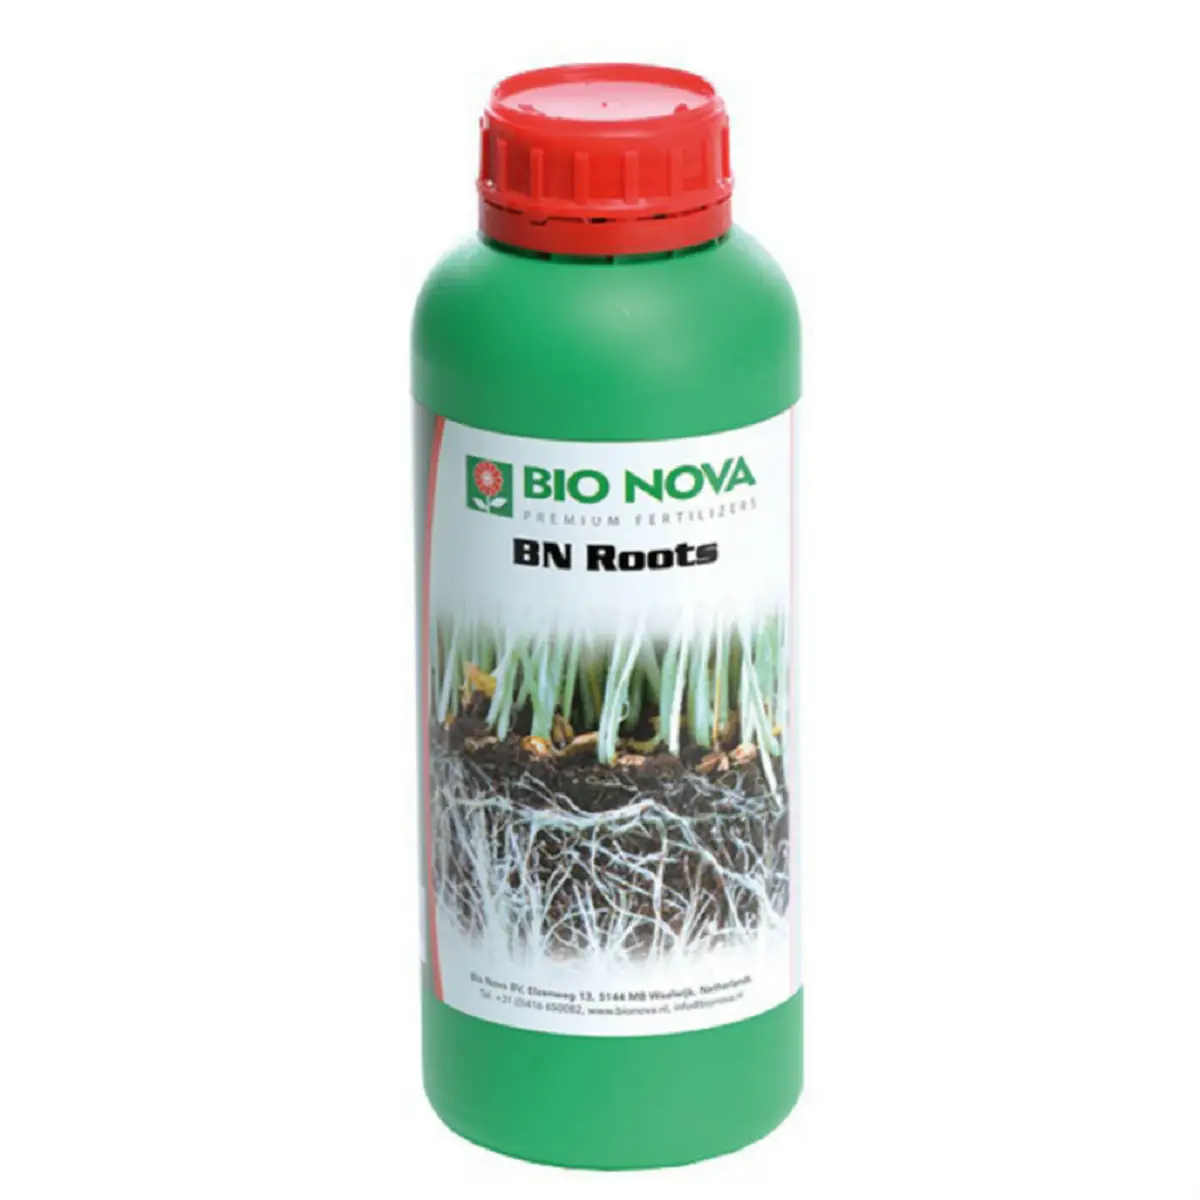 Engrais pour racines Bio Nova BN Roots 1 litre